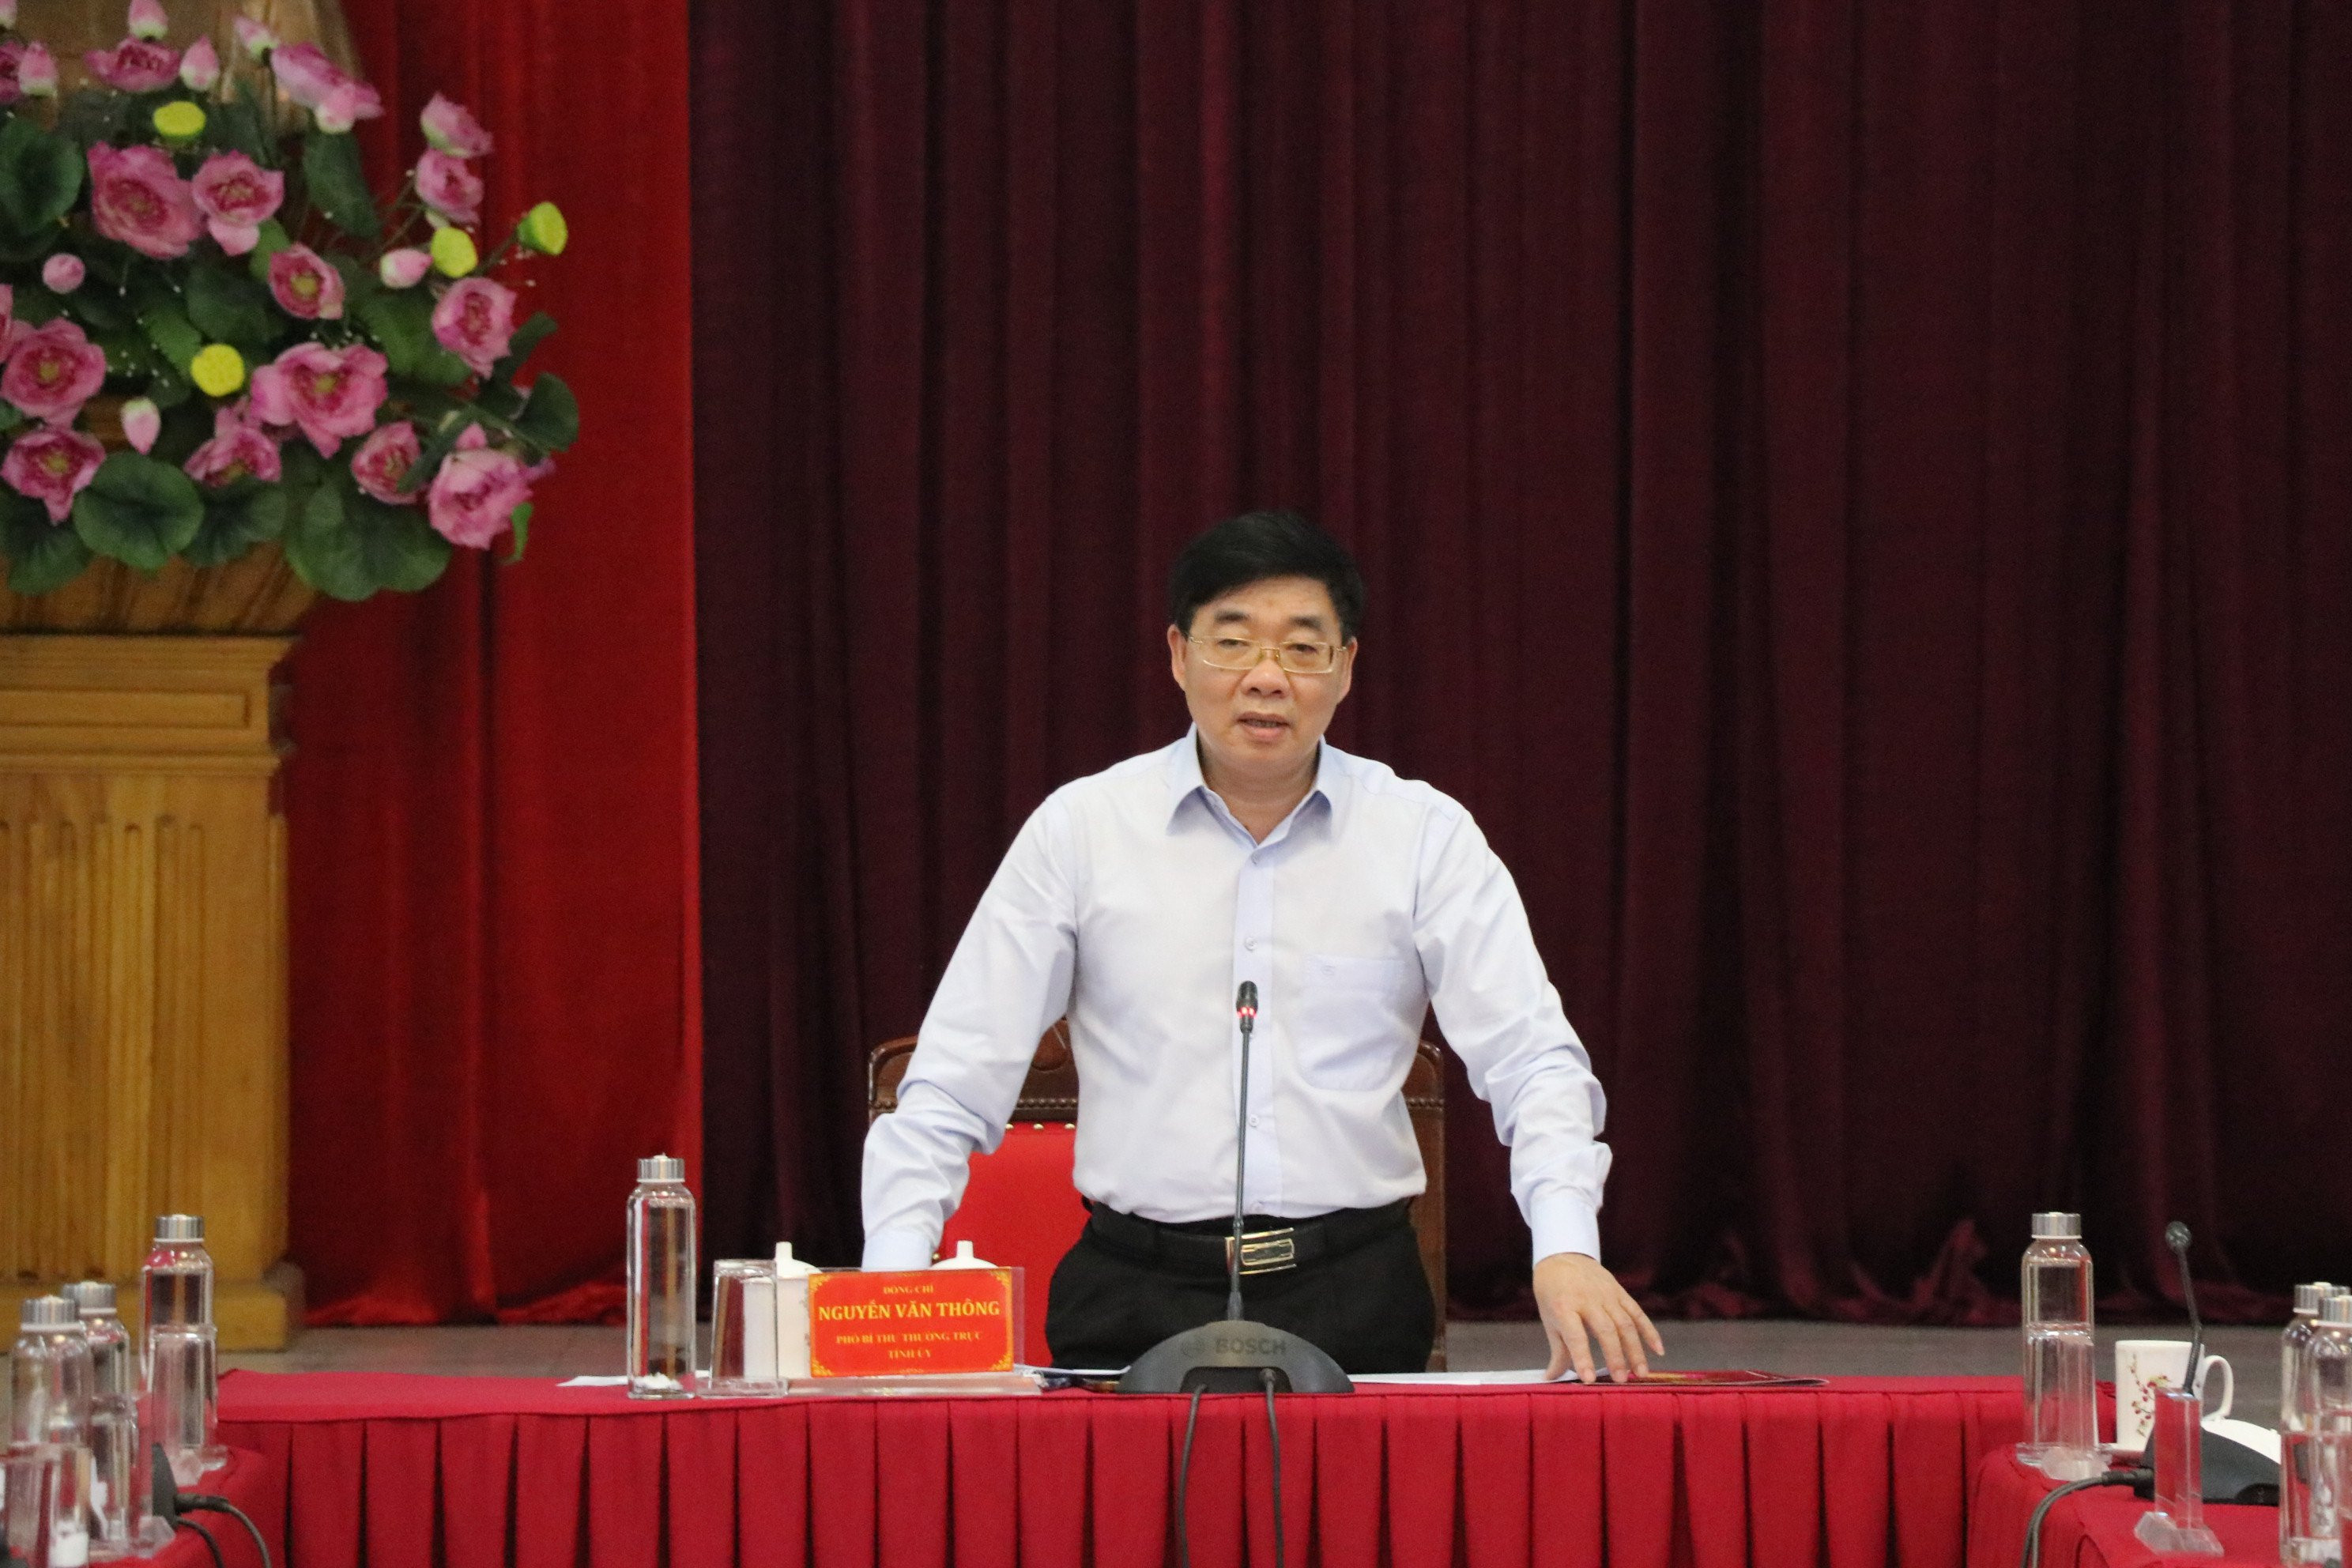 Đồng chí Nguyễn Văn Thông chủ trì hội nghị. Ảnh: Hoài Thu